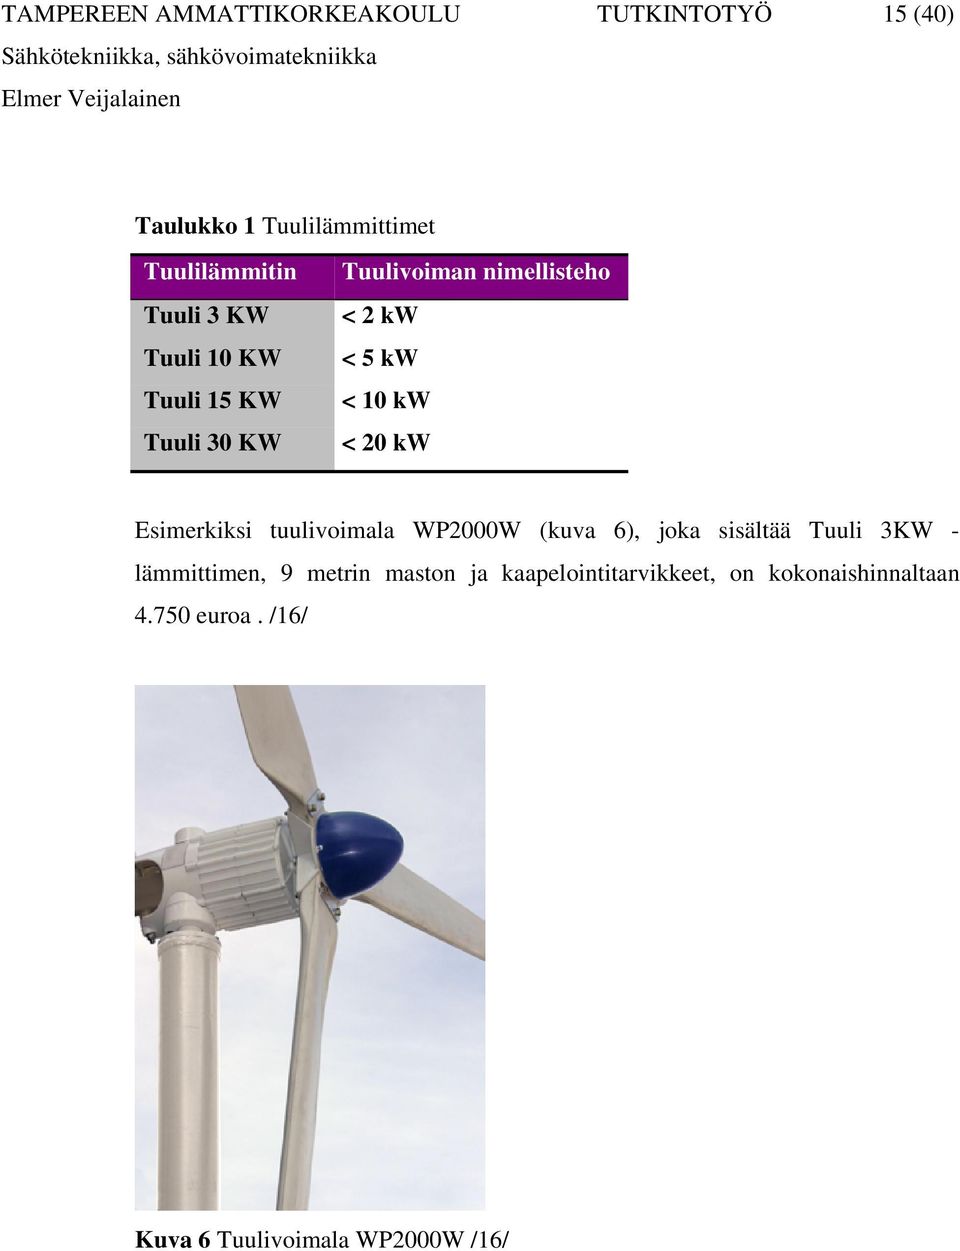 Esimerkiksi tuulivoimala WP2000W (kuva 6), joka sisältää Tuuli 3KW - lämmittimen, 9 metrin maston